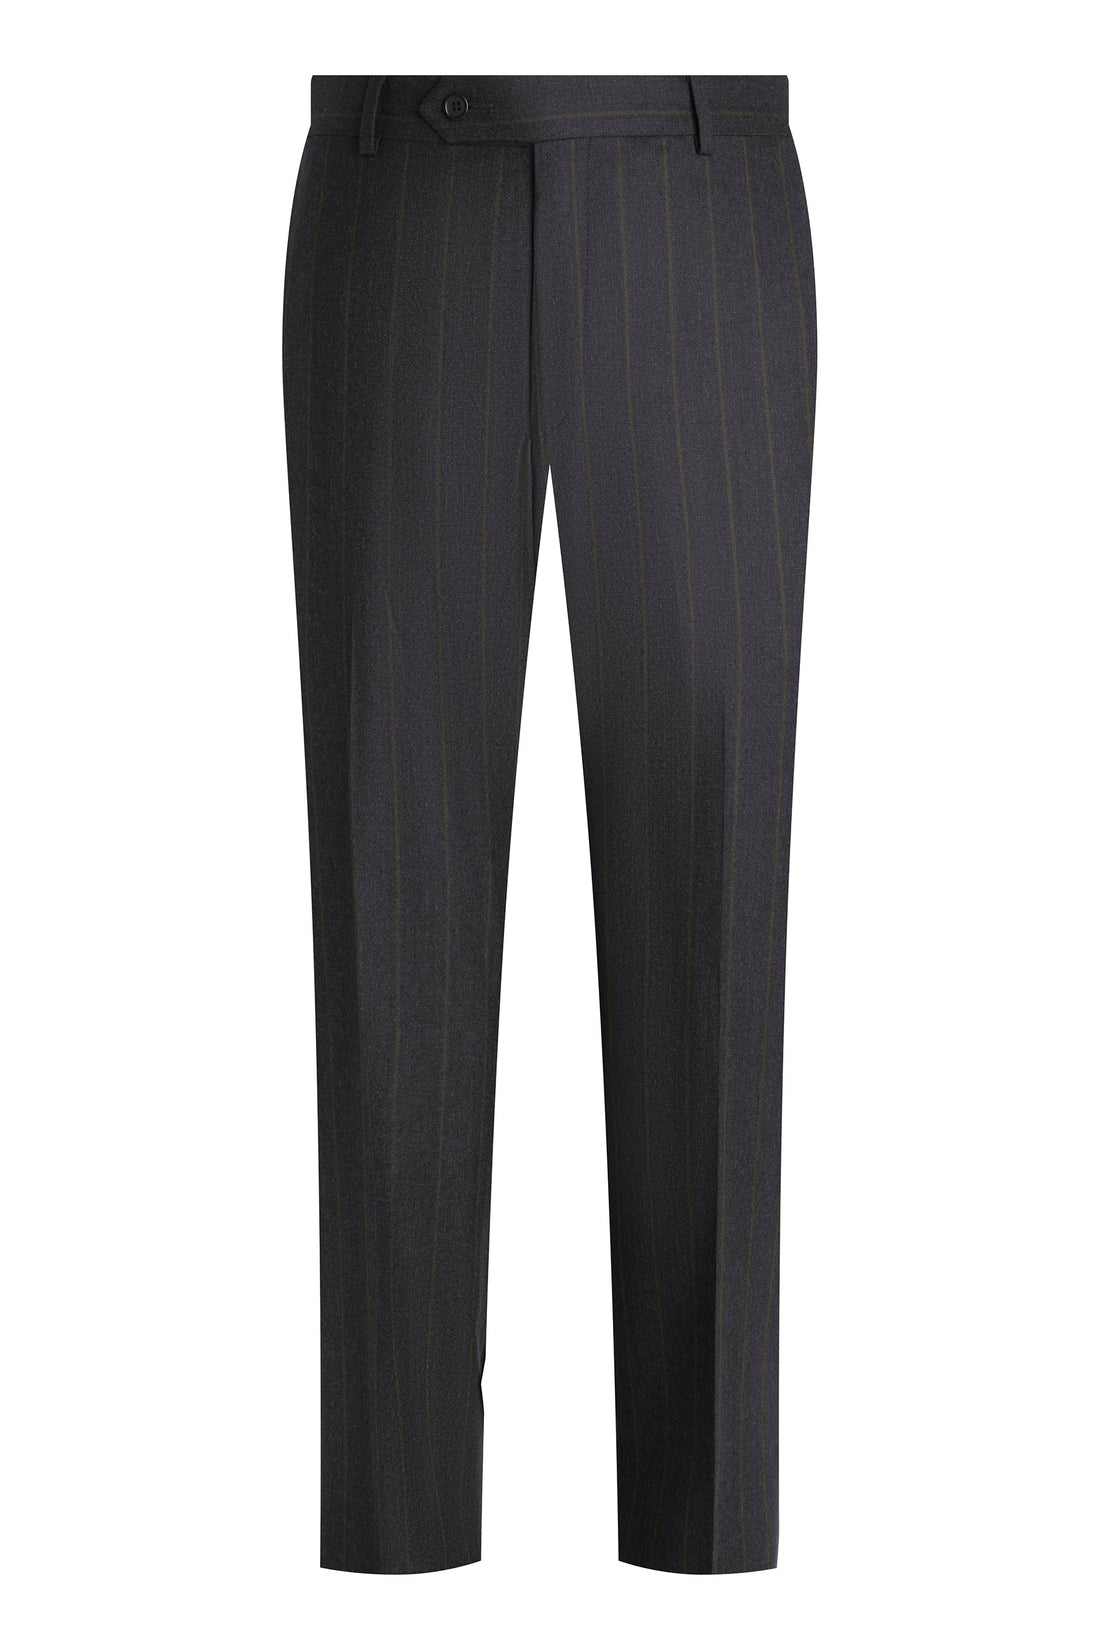 Charcoal Stripe Soft Loop Suit Front Pant